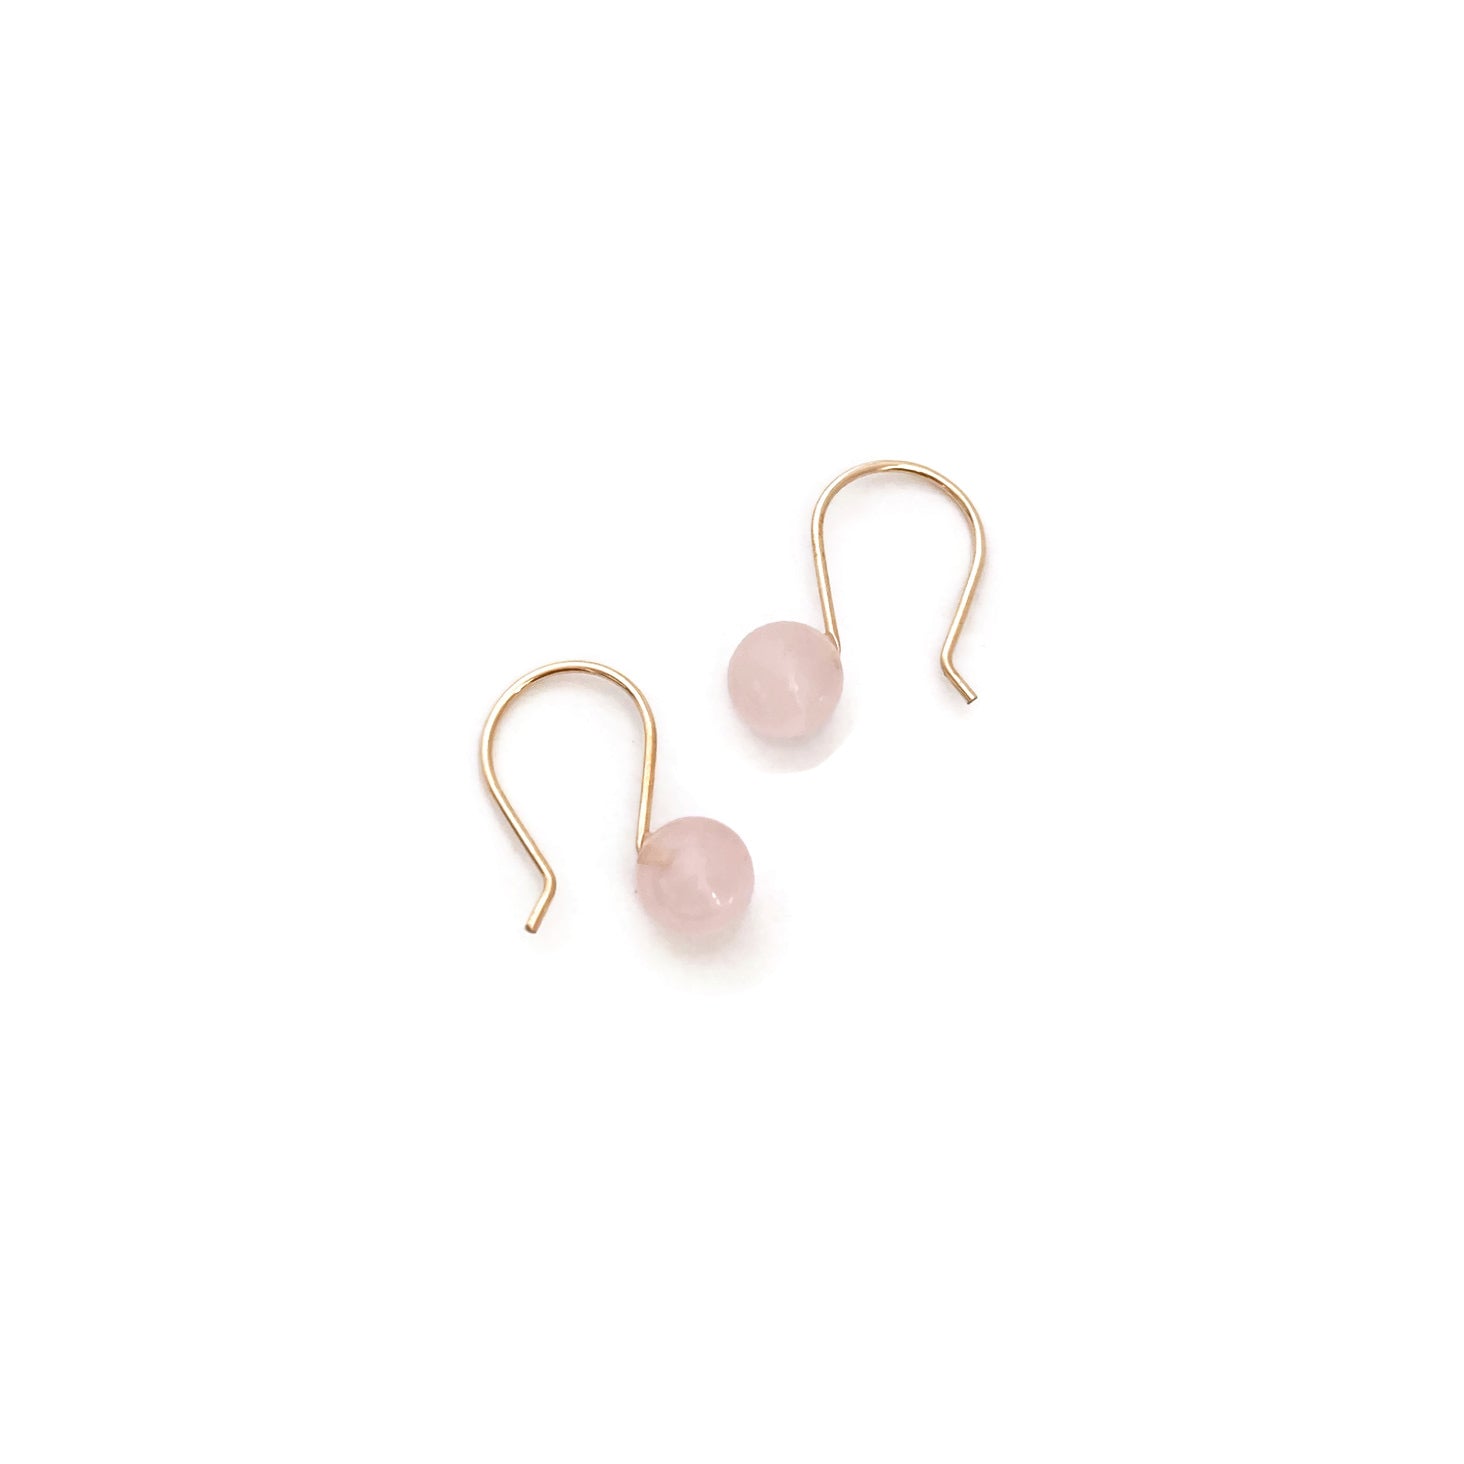 Rose Quartz drop earrings are cute earrings for evreyday wear. 